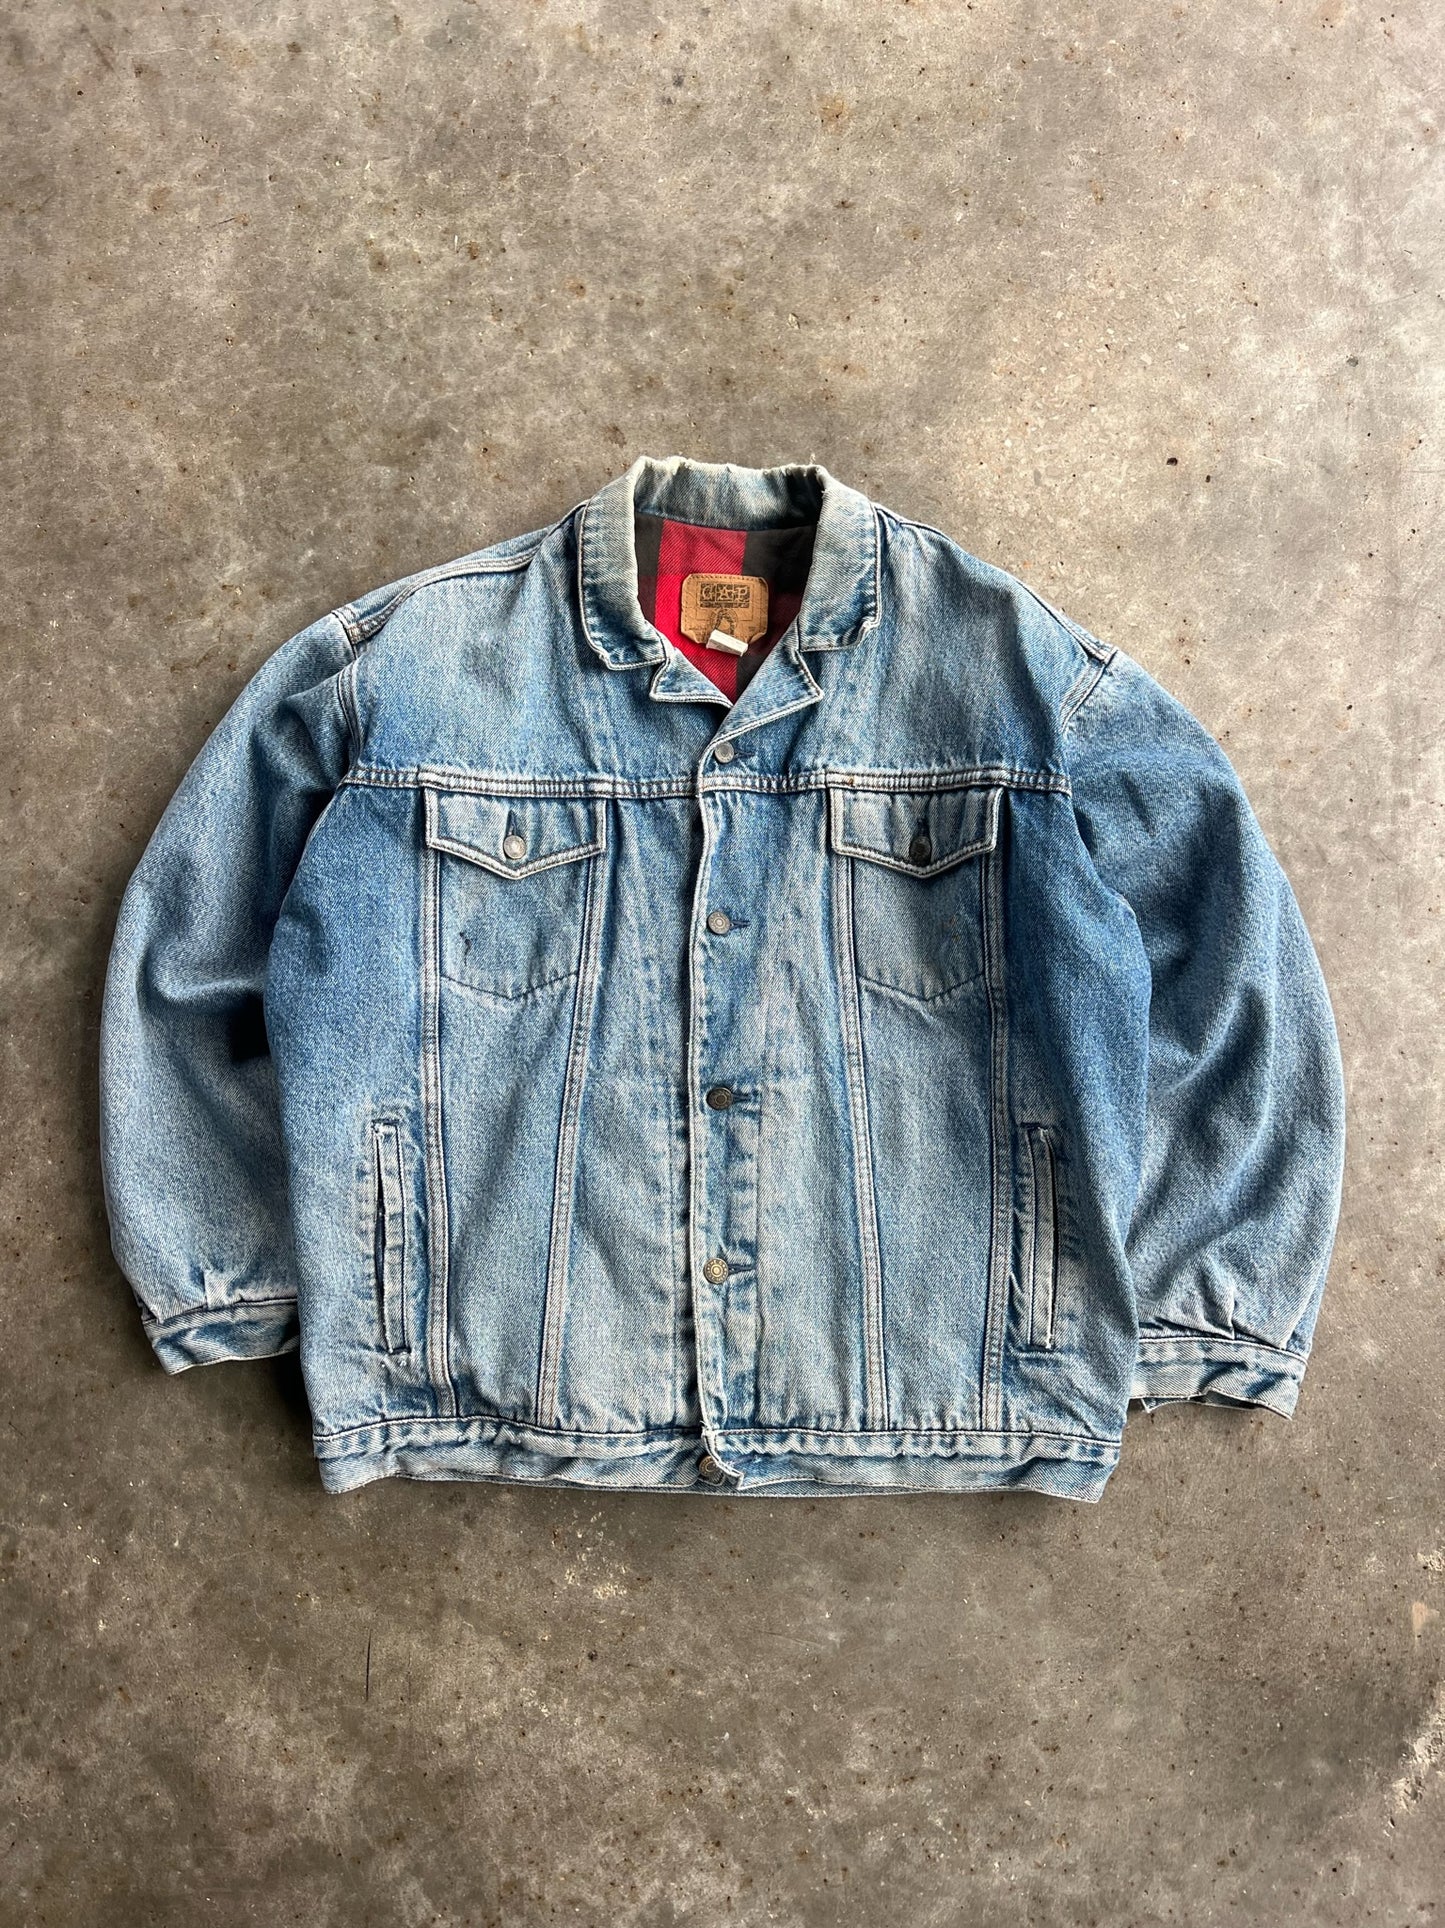 Vintage GAP Denim Flannel Lined Jacket - XL